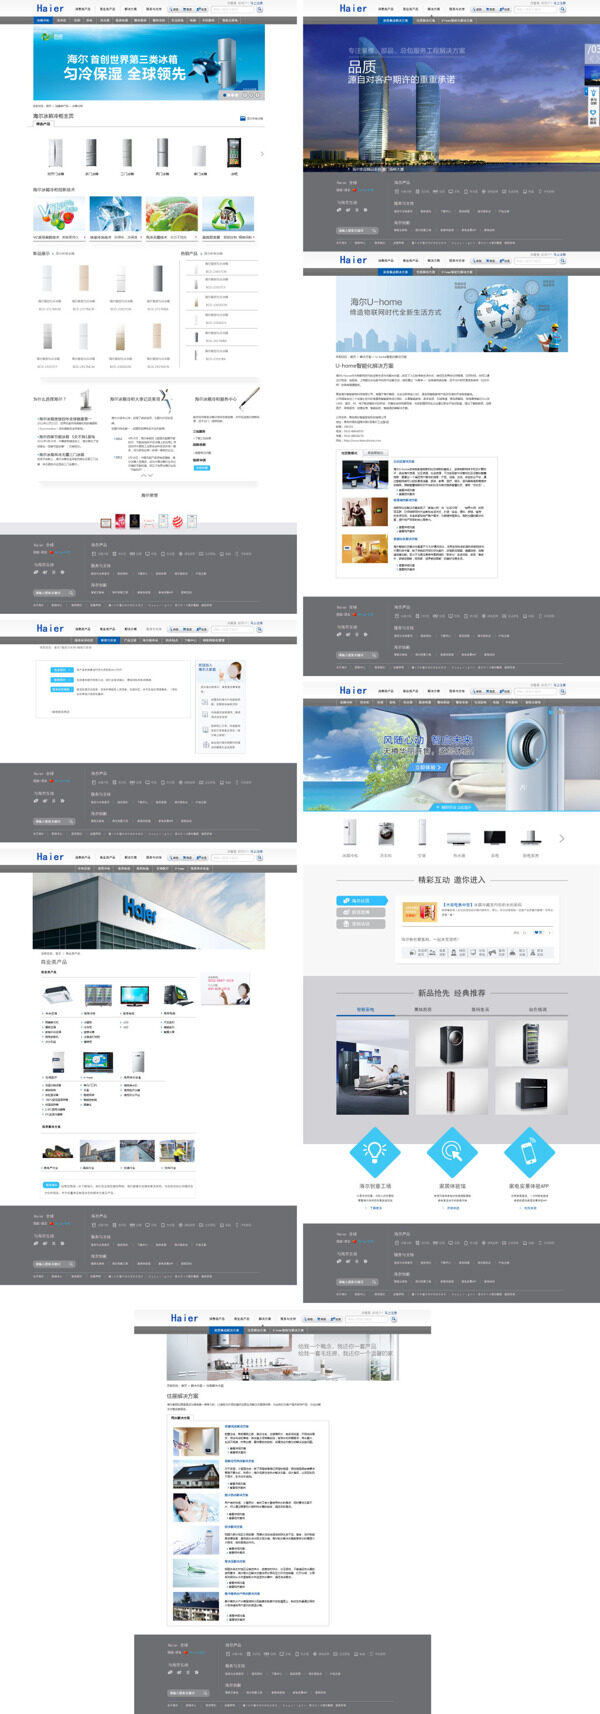 海尔冰箱冷柜系列网页设计